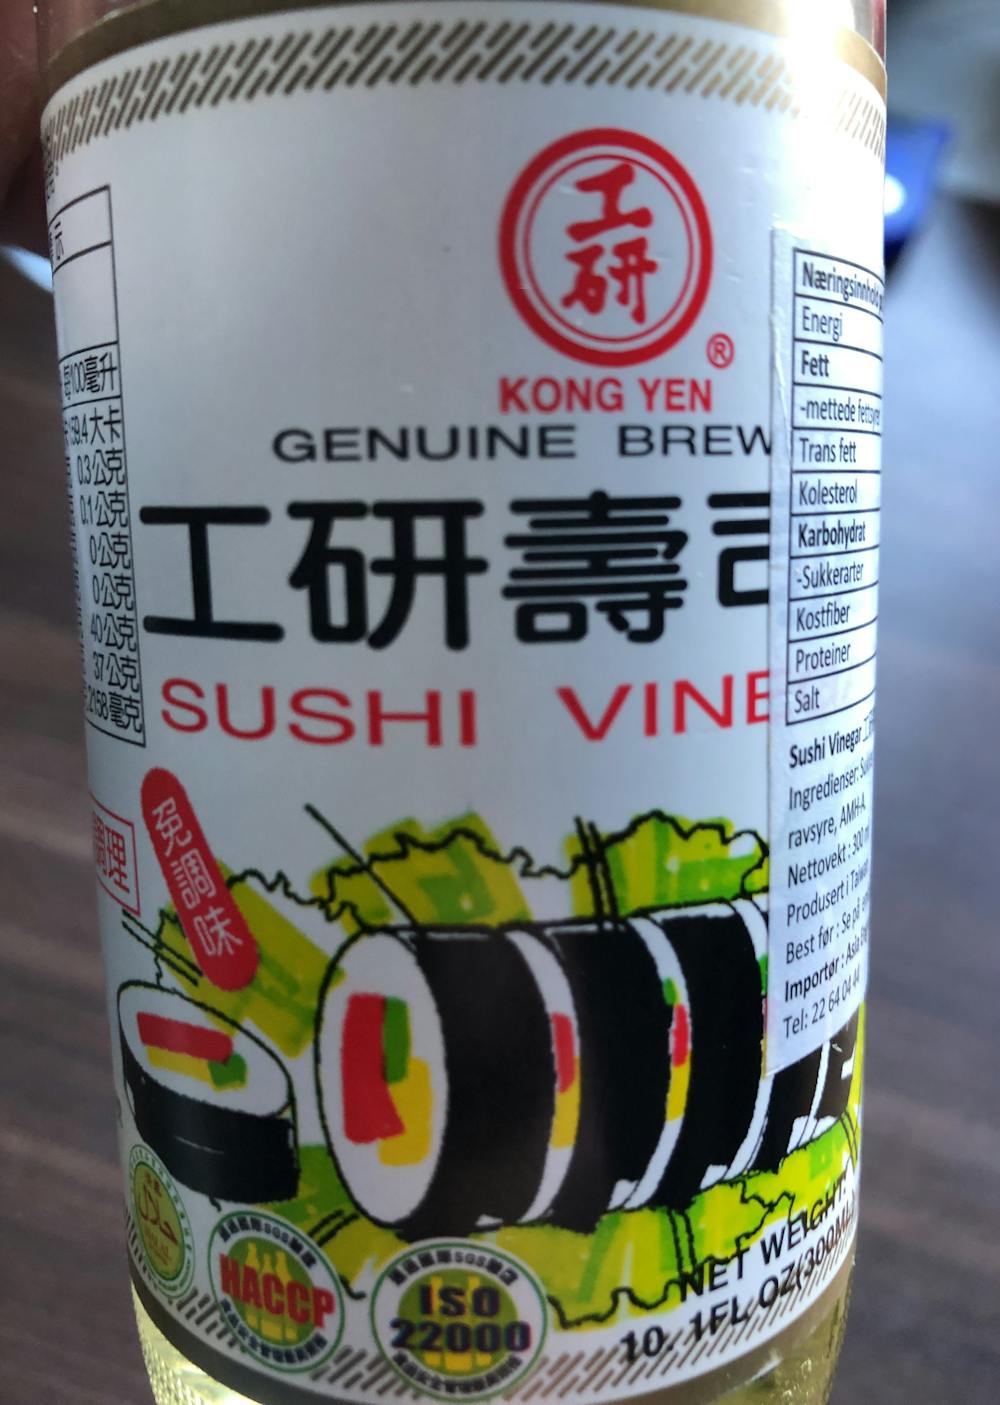 Sushi vinegar, Kong yen